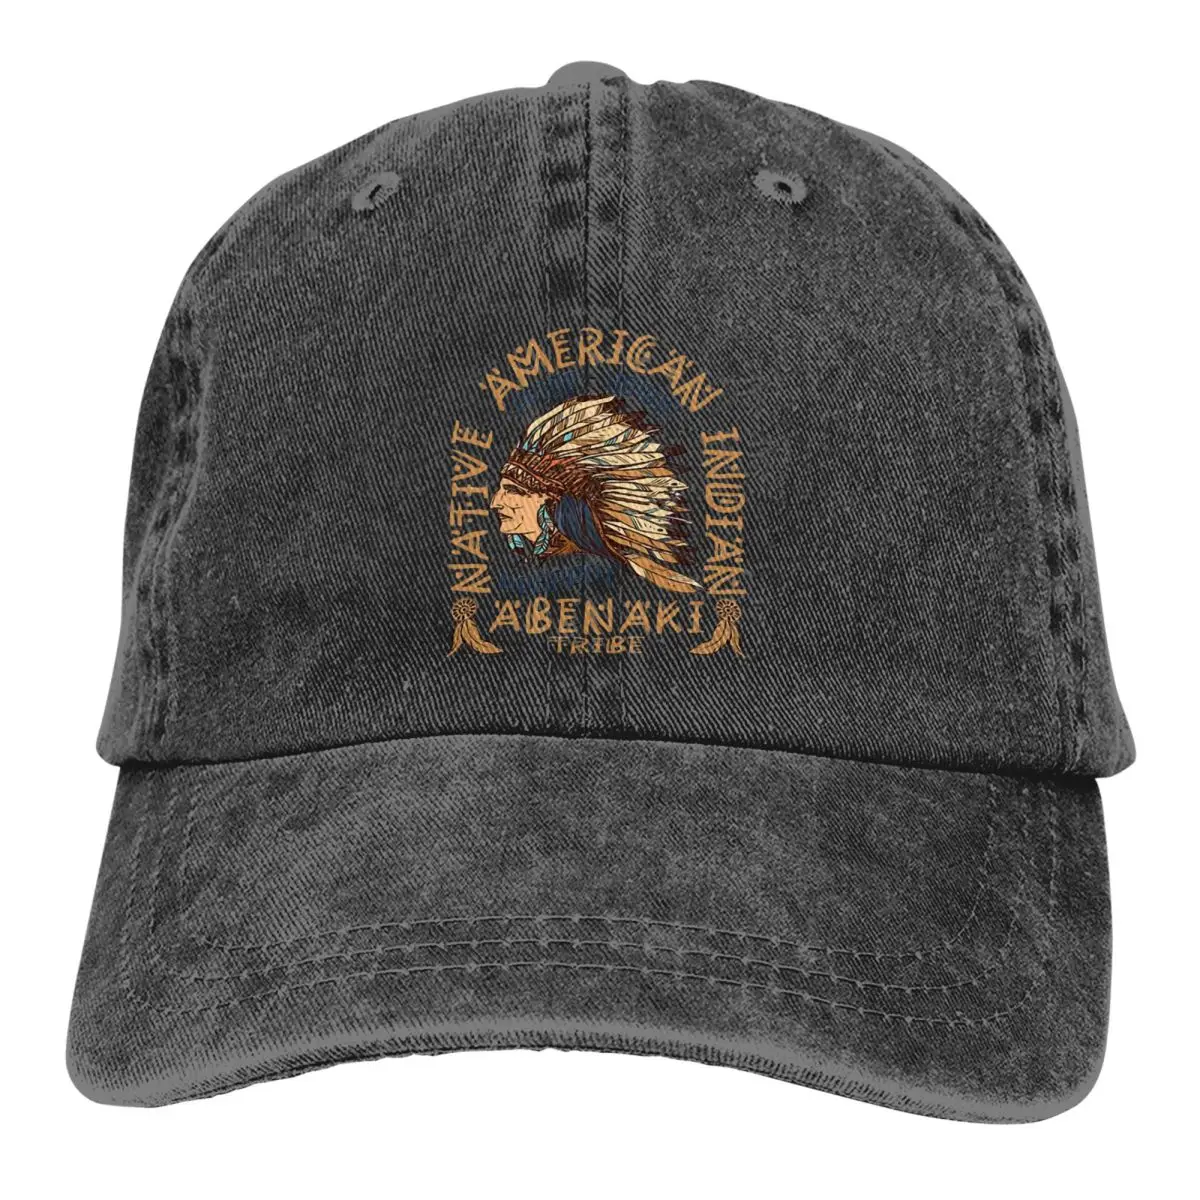 Застиранная мужская бейсболка Indian Pride Trucker Snapback Caps, папина шляпа, шляпы для гольфа индейского племени